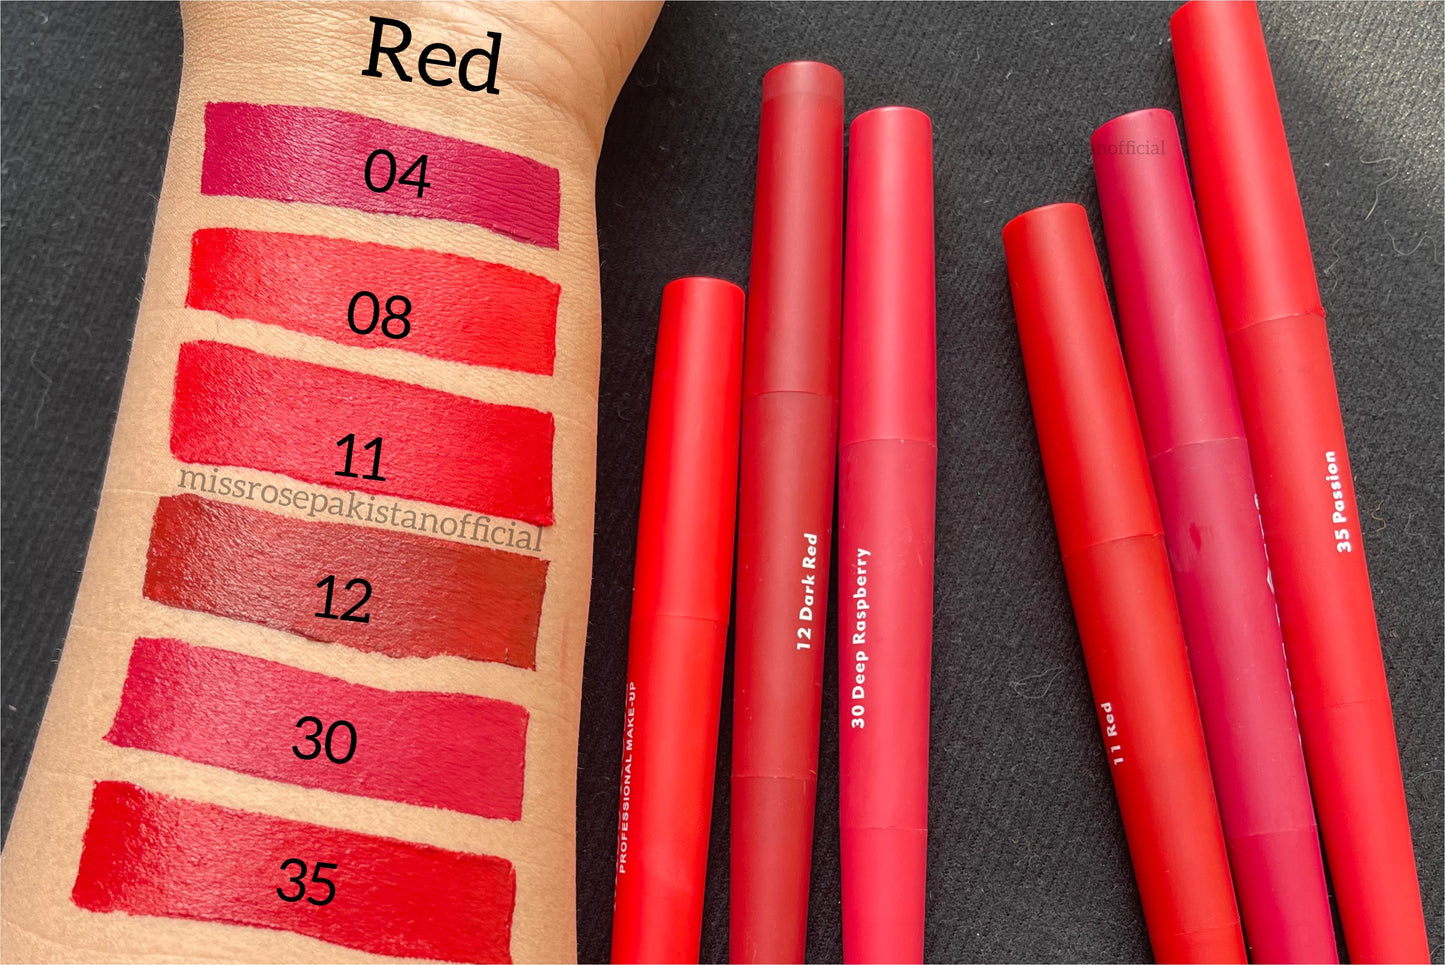 Lipsticks 2 in 1 - Reds